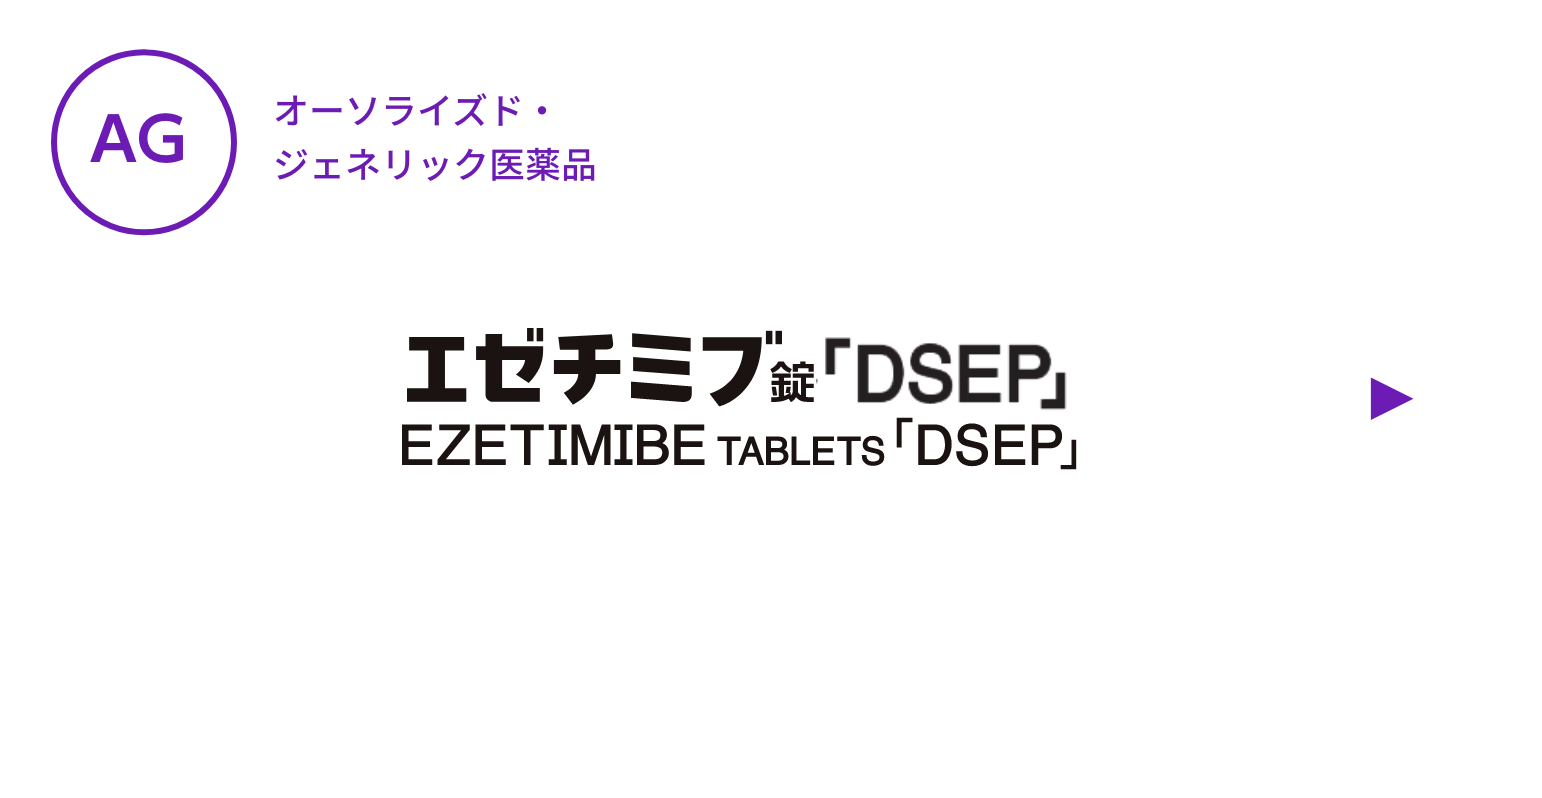 【AG】エゼチミブ錠「DSEP」